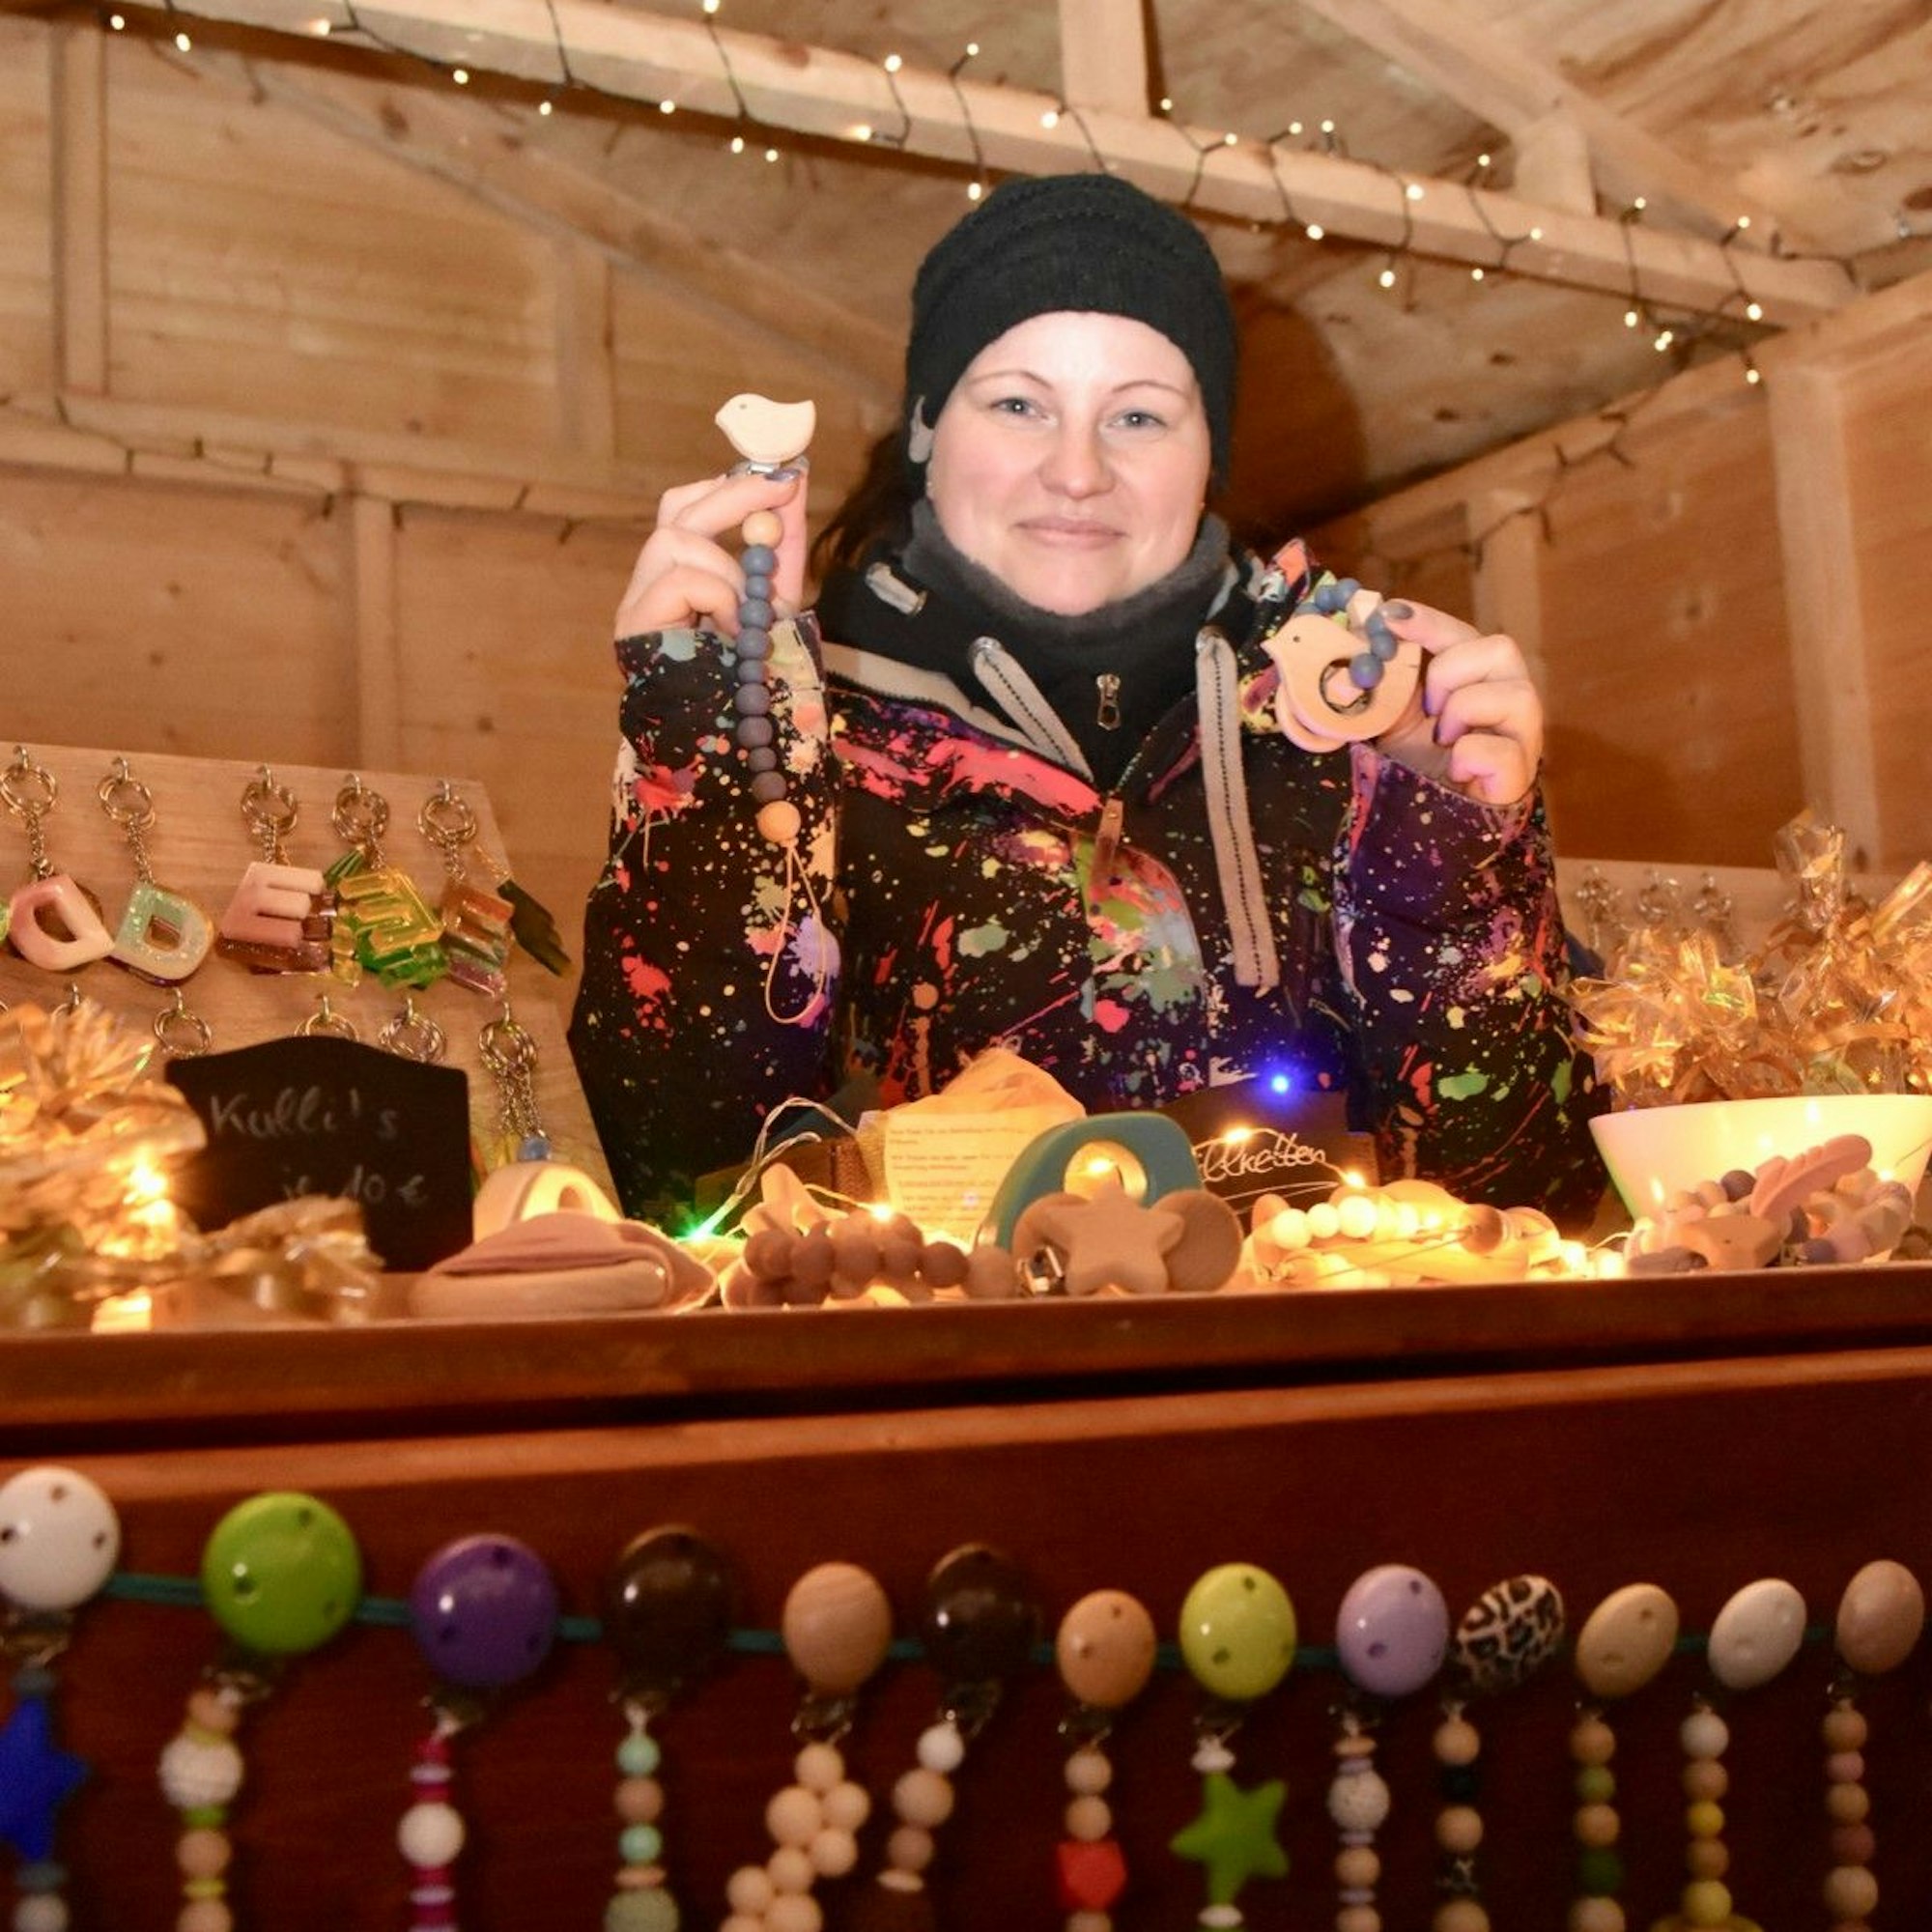 Eine Frau an ihrem Weihnachtsmarktstand. Sie zeigt Schnullerketten, die auch im Vordergrund hängen.